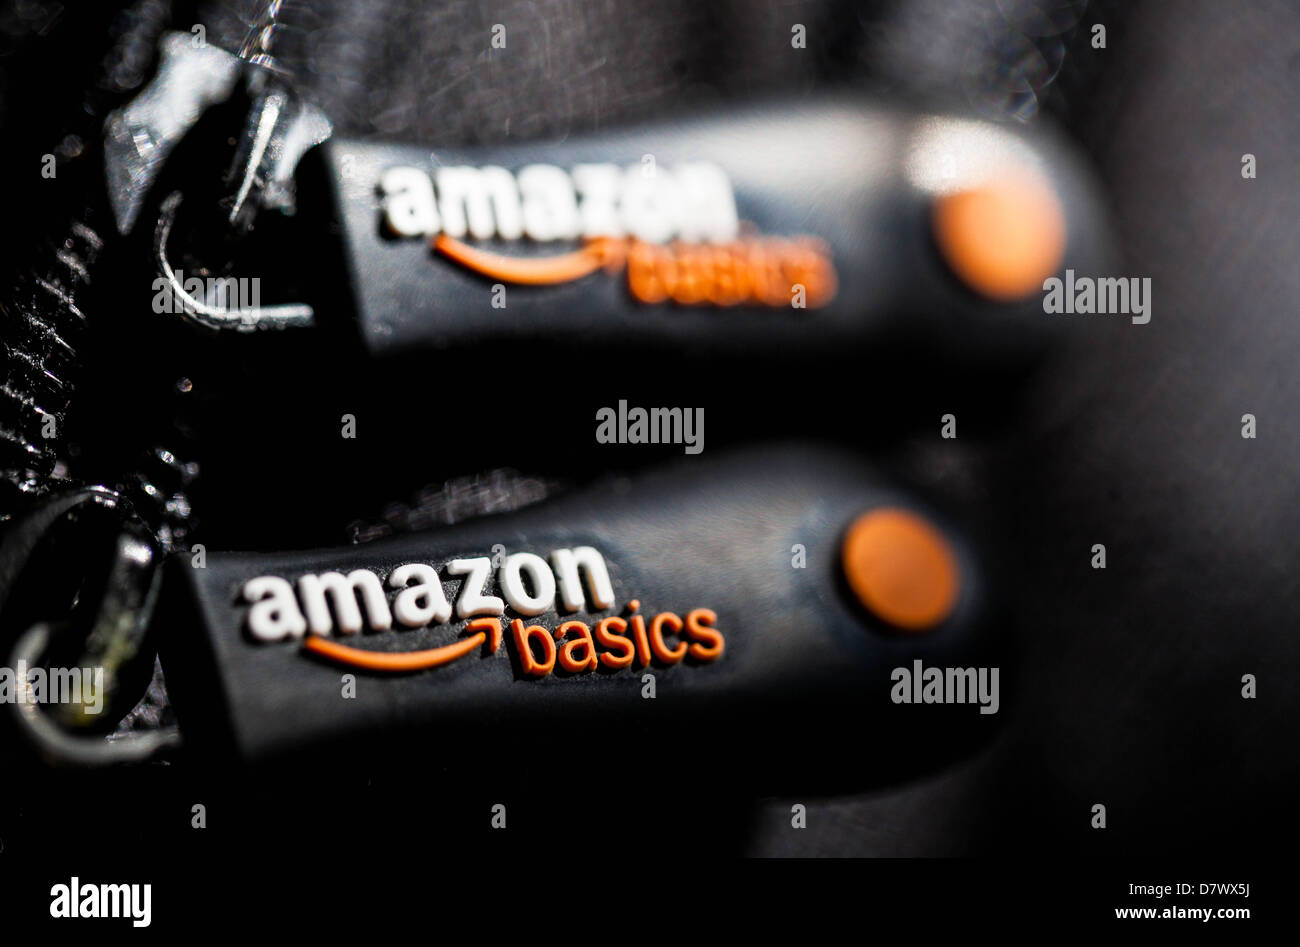 Amazon basics sign Stock Photo